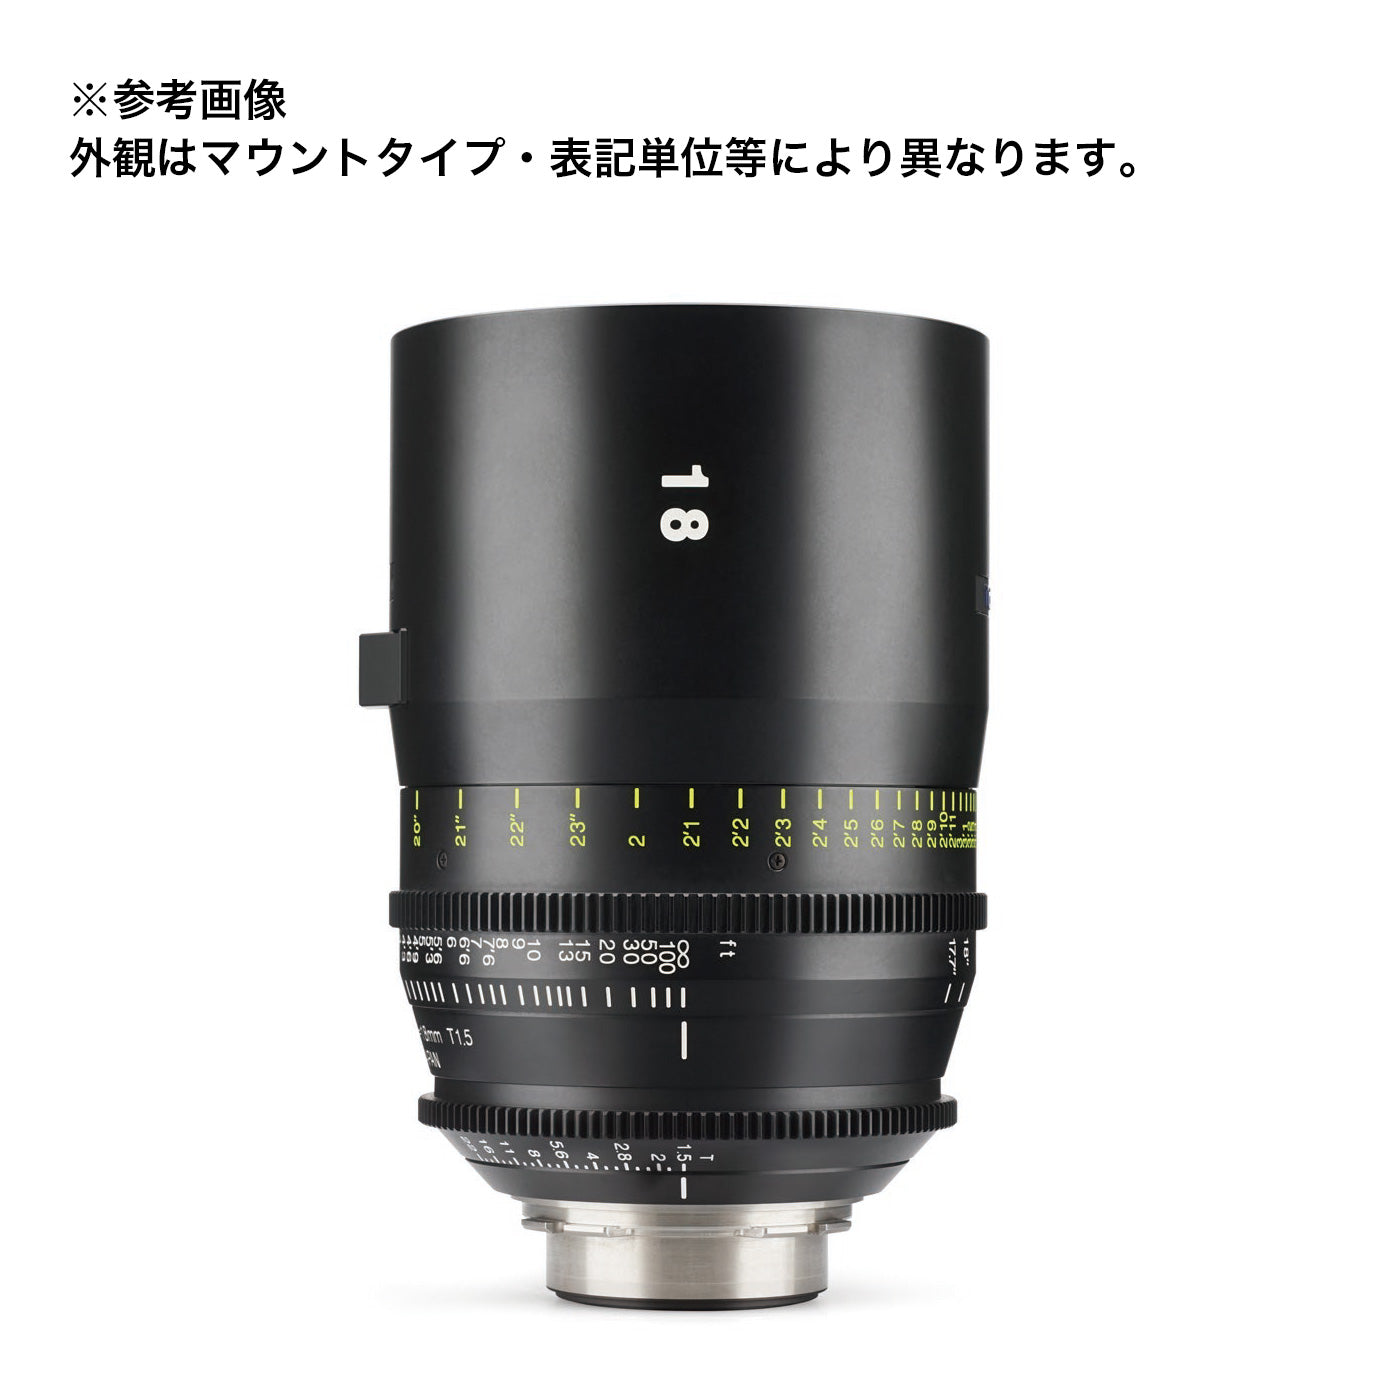 Tokina(トキナー) シネマプライムレンズ VISTA 18mm T1.5 CINEMA LENS マイクロフォーサーズマウント フィート表記 [264146]